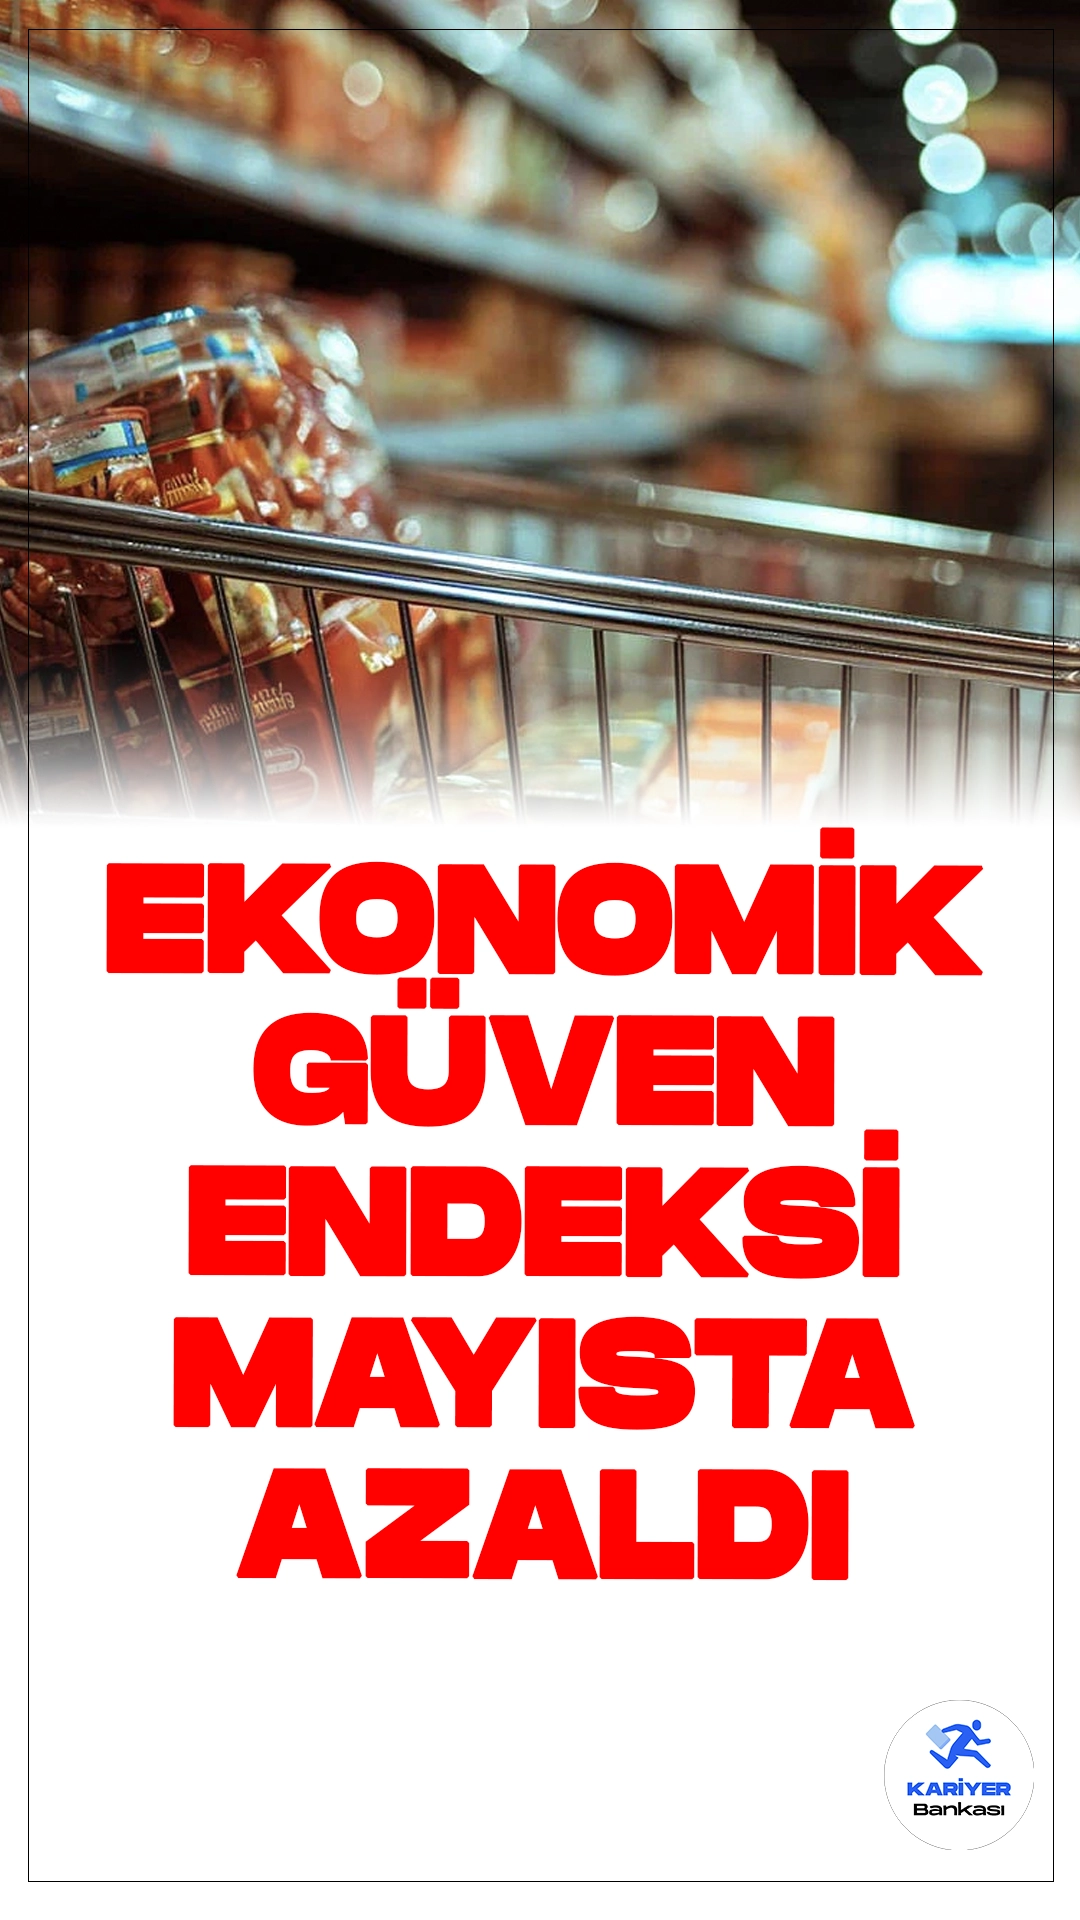 Ekonomik güven endeksi, Mayıs ayında aylık bazda %0,8 azalışla 98,2 değerine geriledi. Türkiye İstatistik Kurumu (TÜİK) tarafından açıklanan verilere göre, Nisan ayında 99,0 olan endeks, Mayıs ayında %0,8 oranında azalarak 98,2 seviyesine düştü.